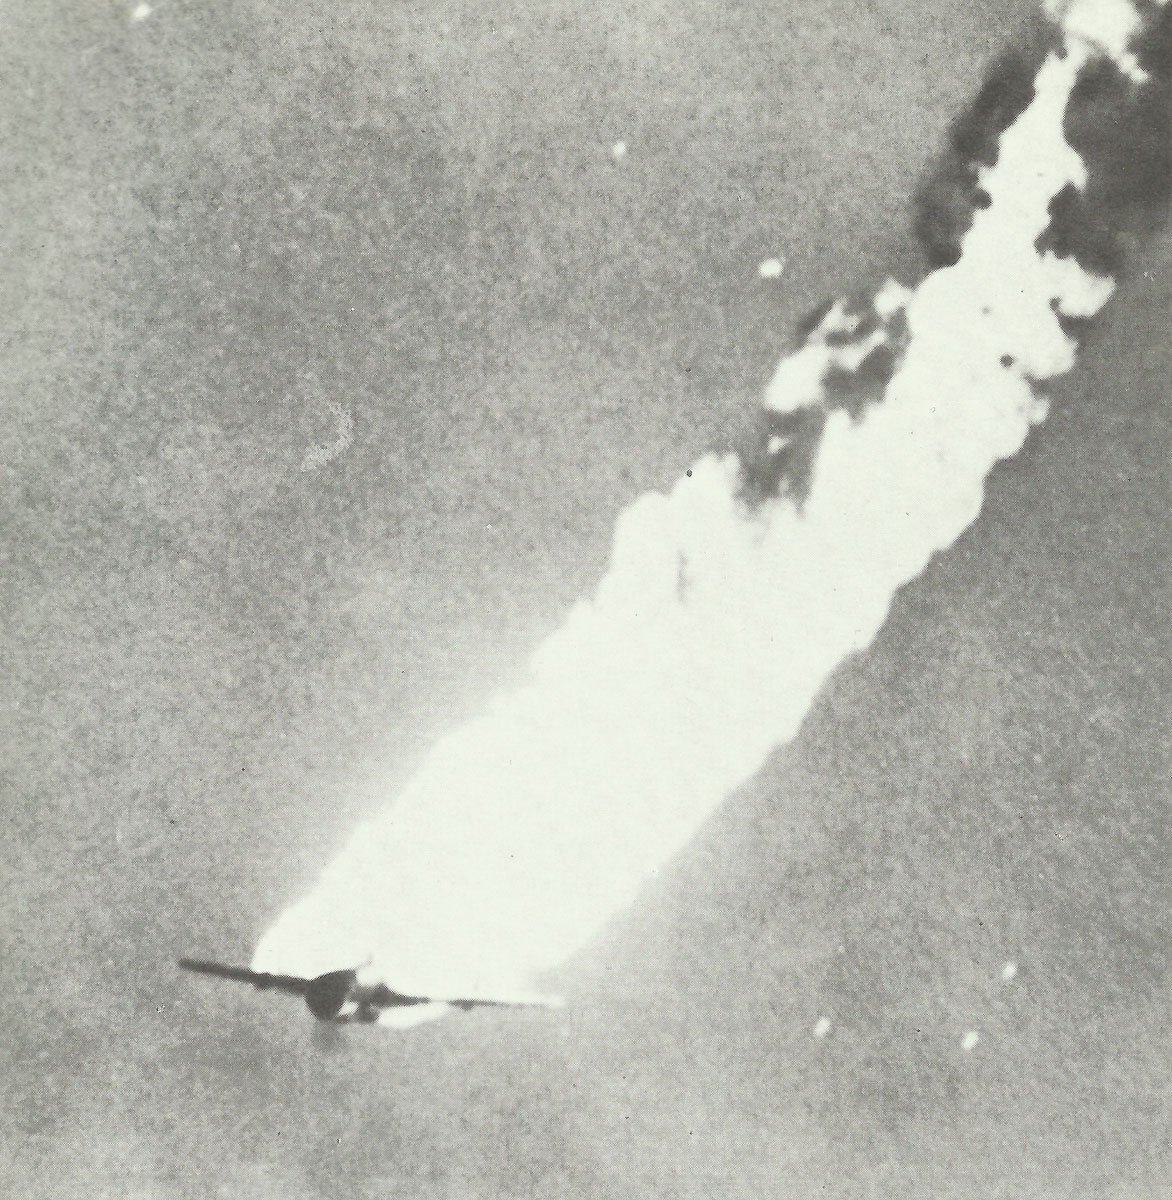 brennender japanischer Torpedobomber